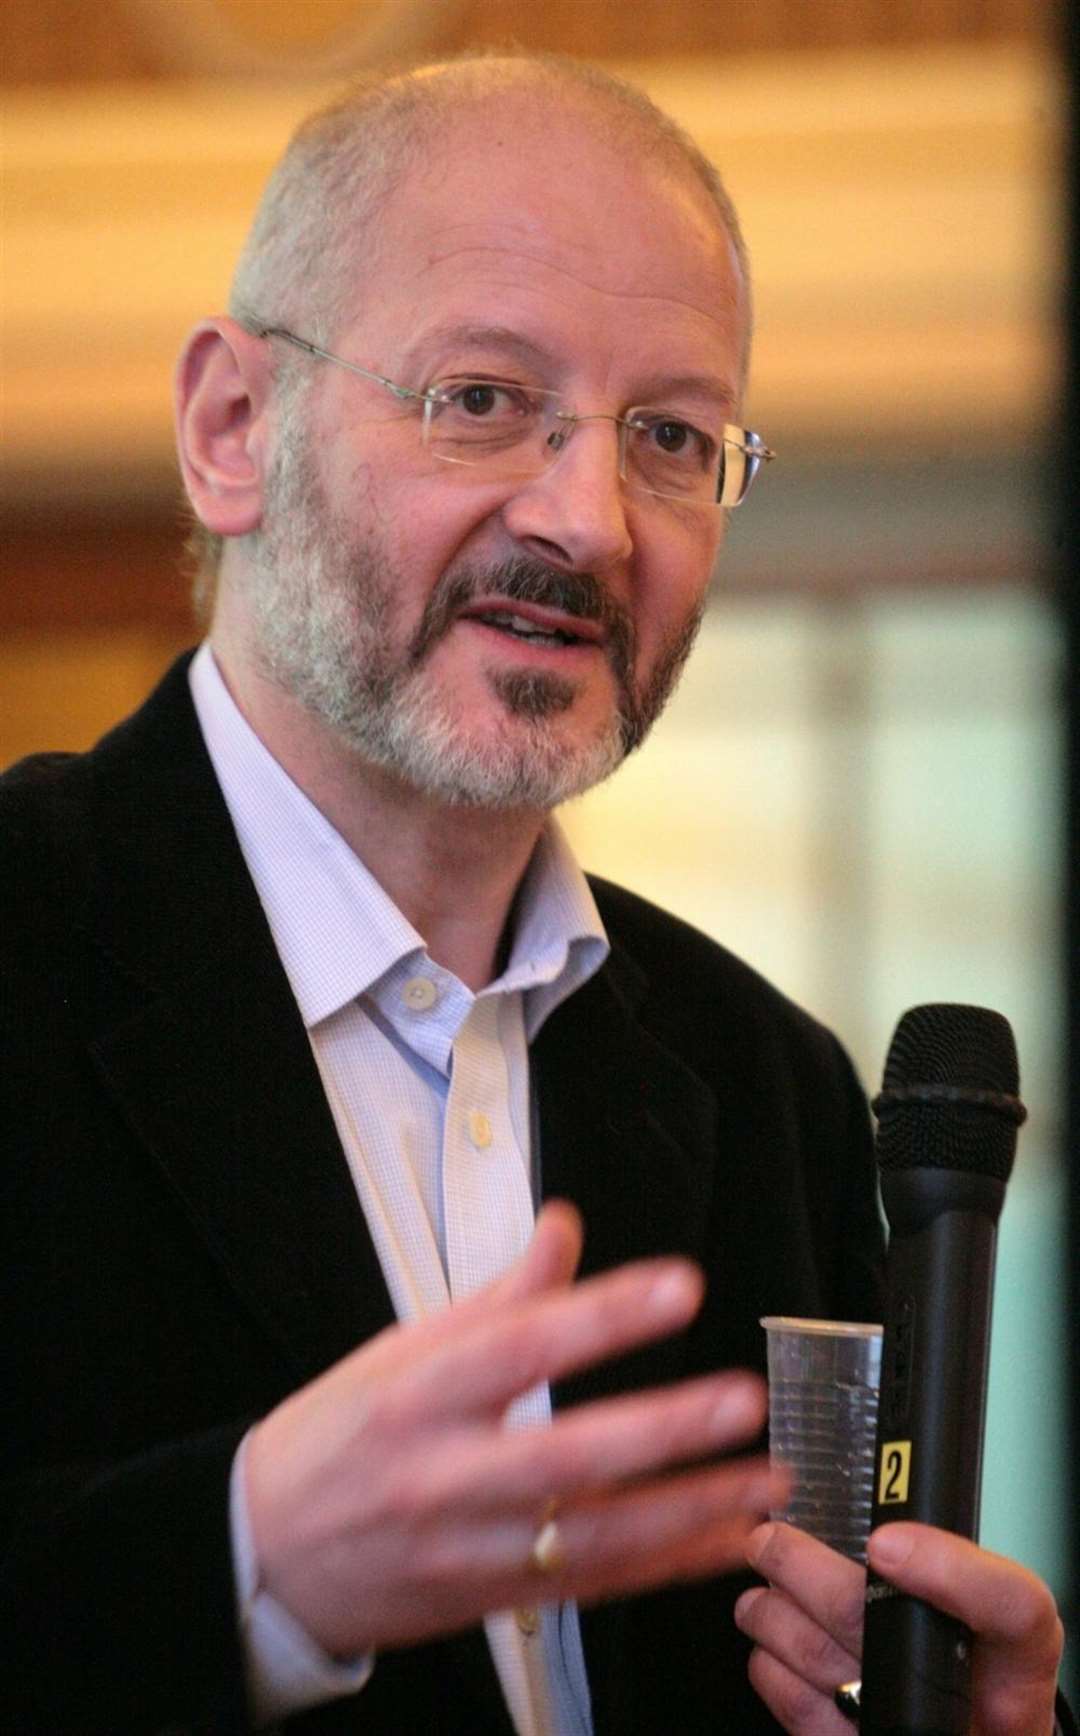 Peter Bradley, director of the Speakers' Corner Trust